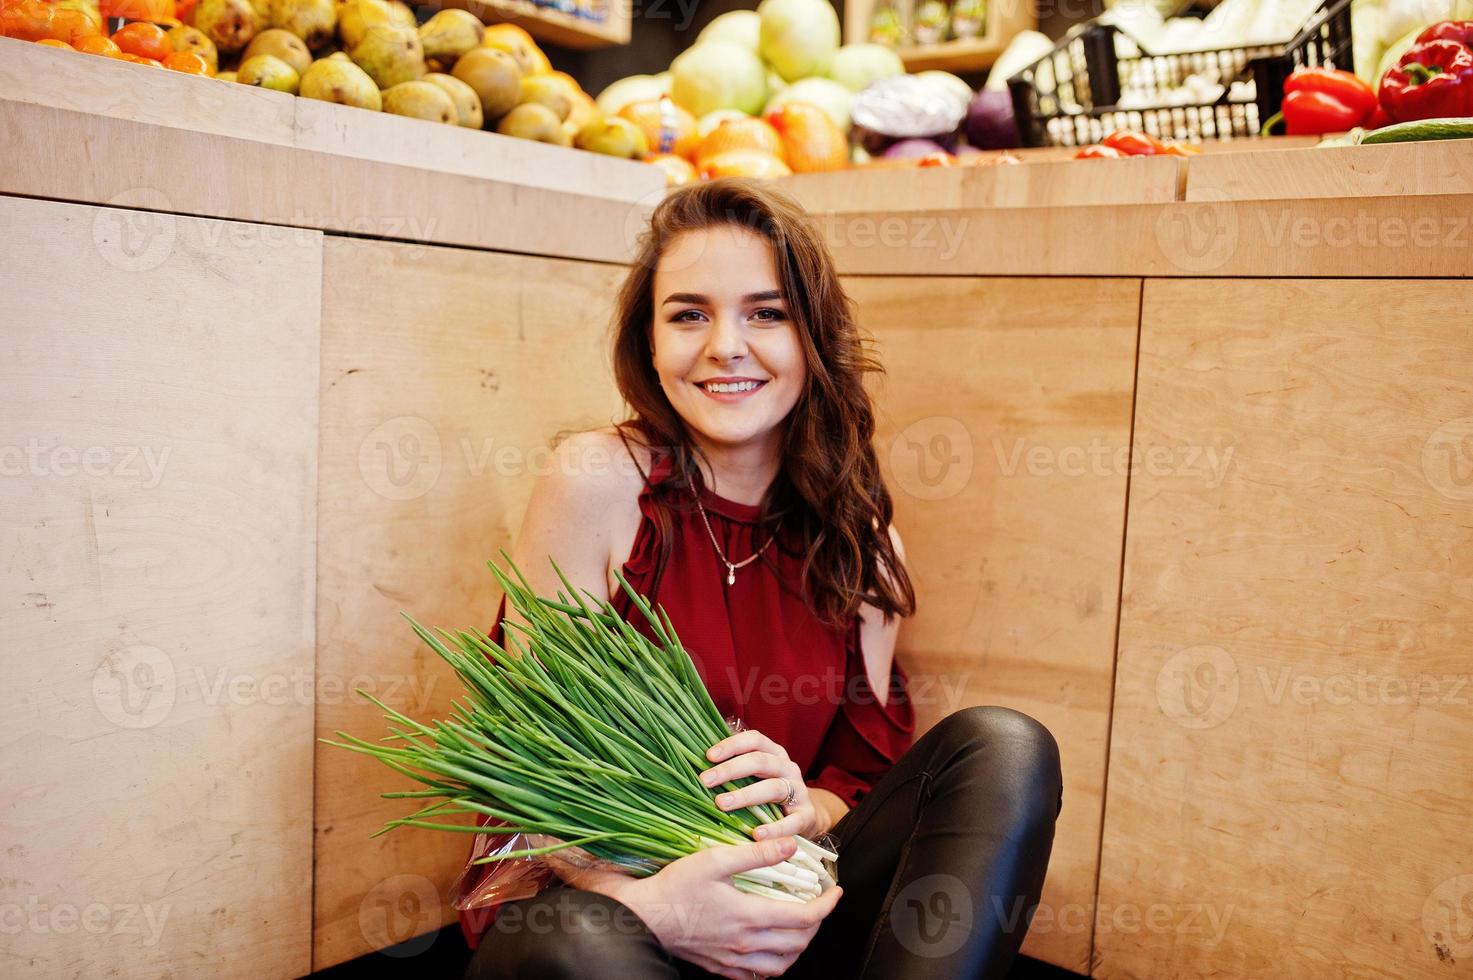 ragazza in rosso che tiene cipolle verdi sul negozio di frutta. foto